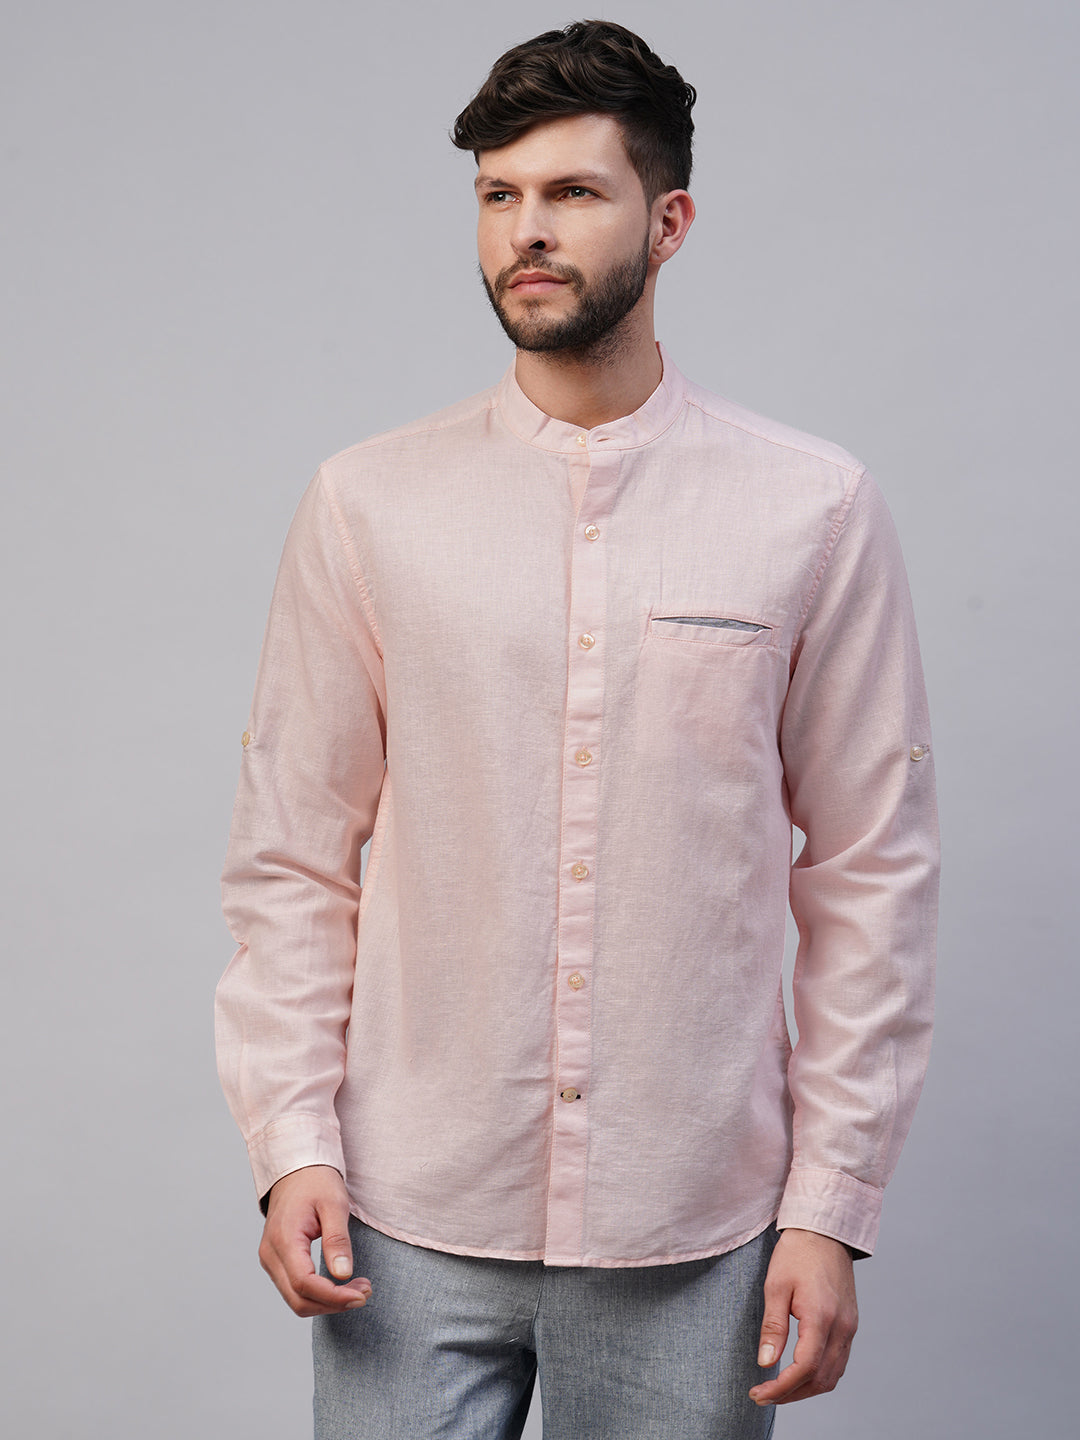 Men's Linen Cotton Pink Regular Fit shirt